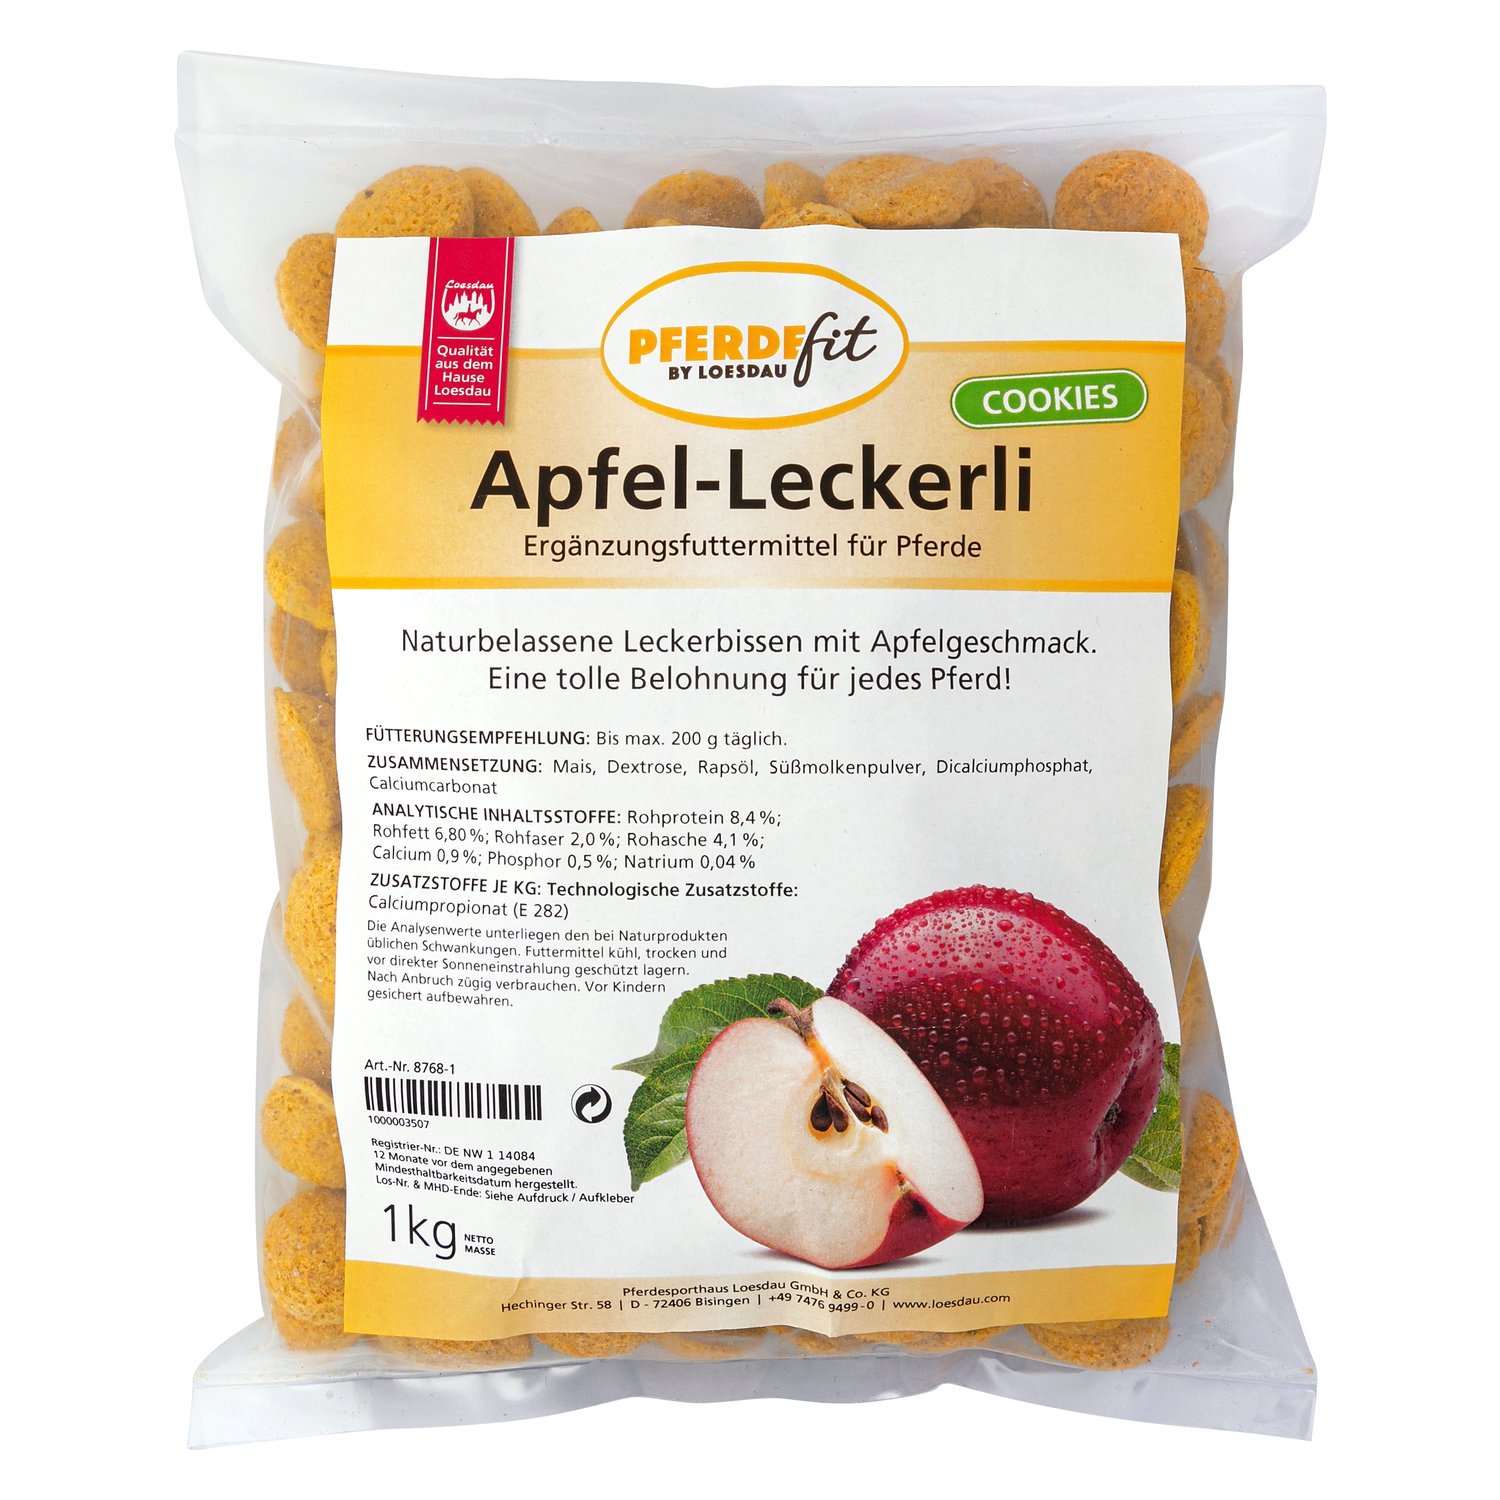 PFERDEfit by Loesdau Apfel-Leckerli 1 kg